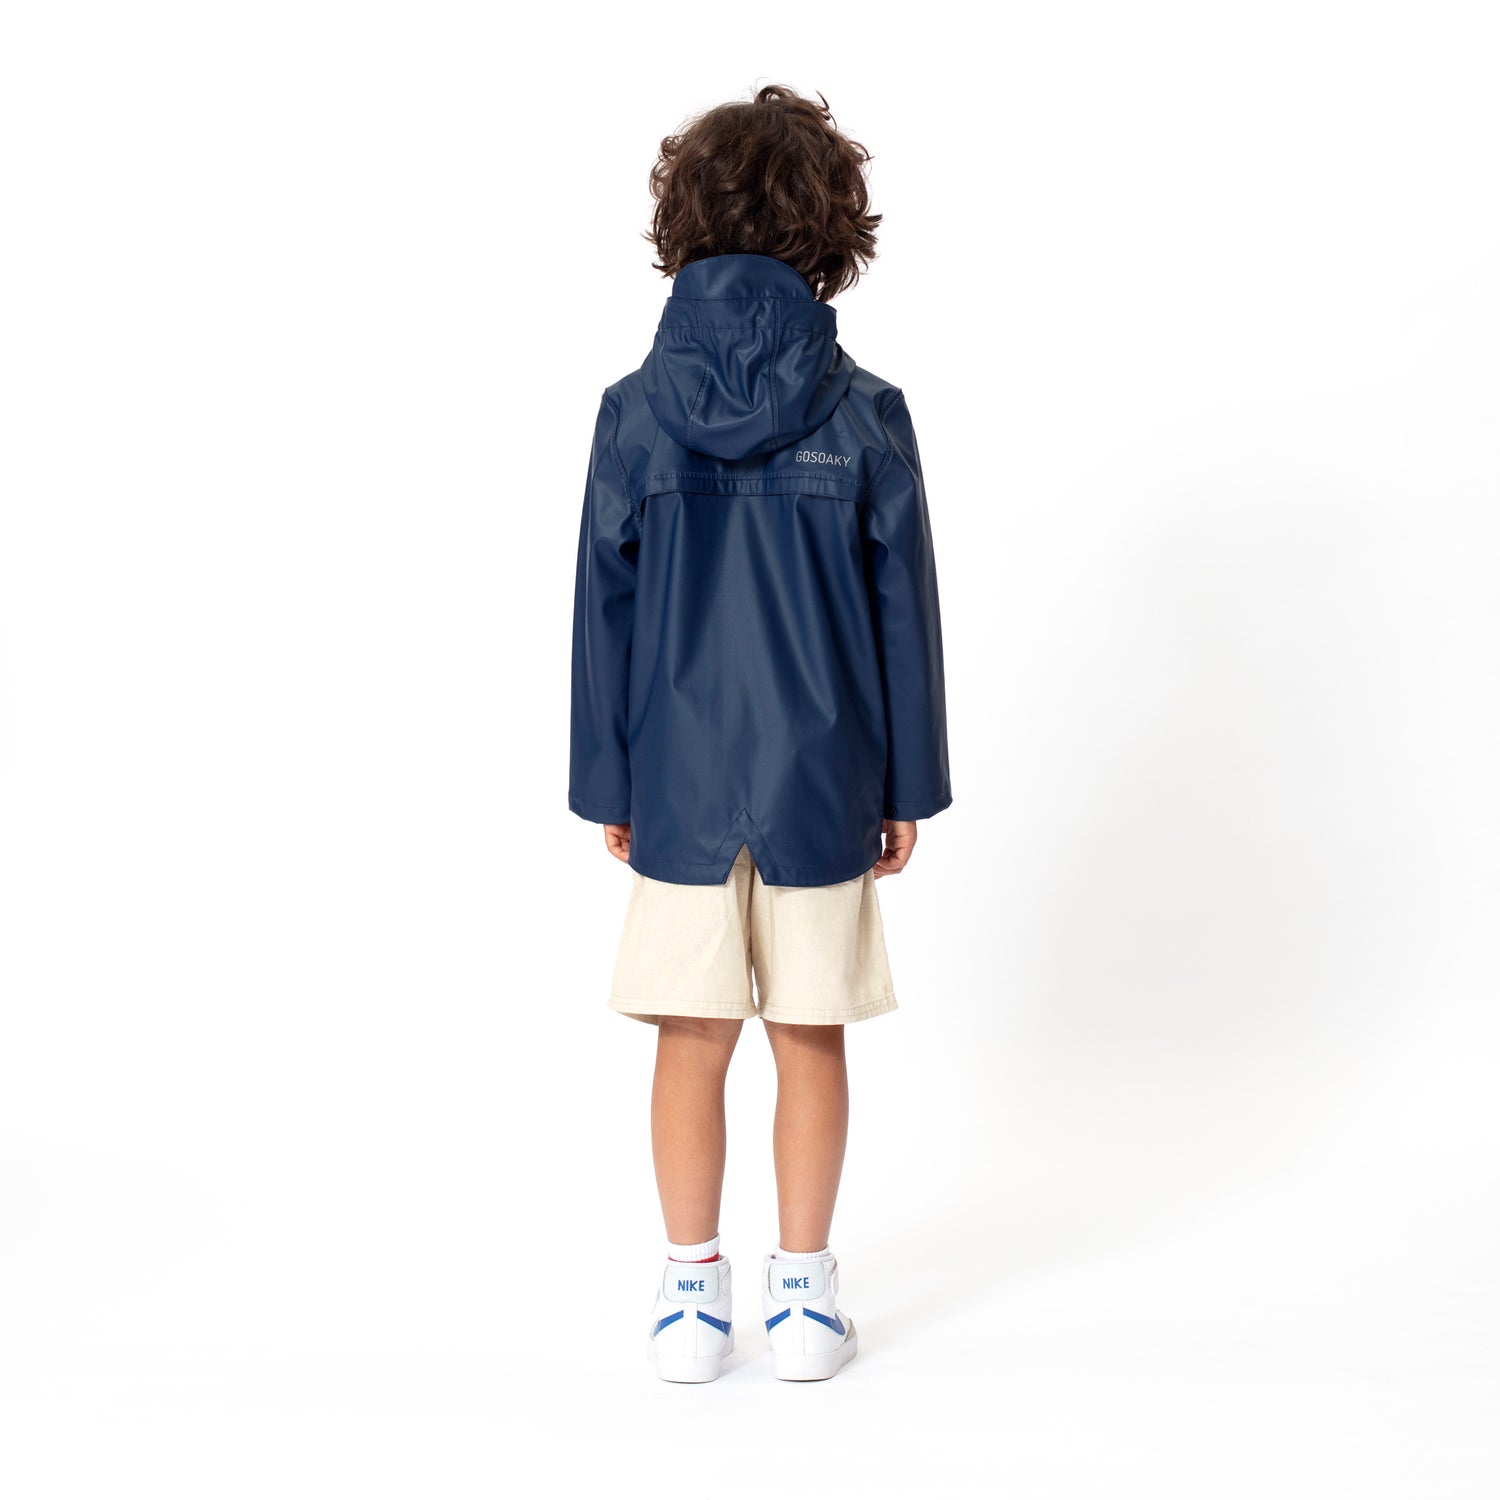 GOSOAKY-ELEPHANT-MAN-Product-Image-rainwear-raincoat-for-kids